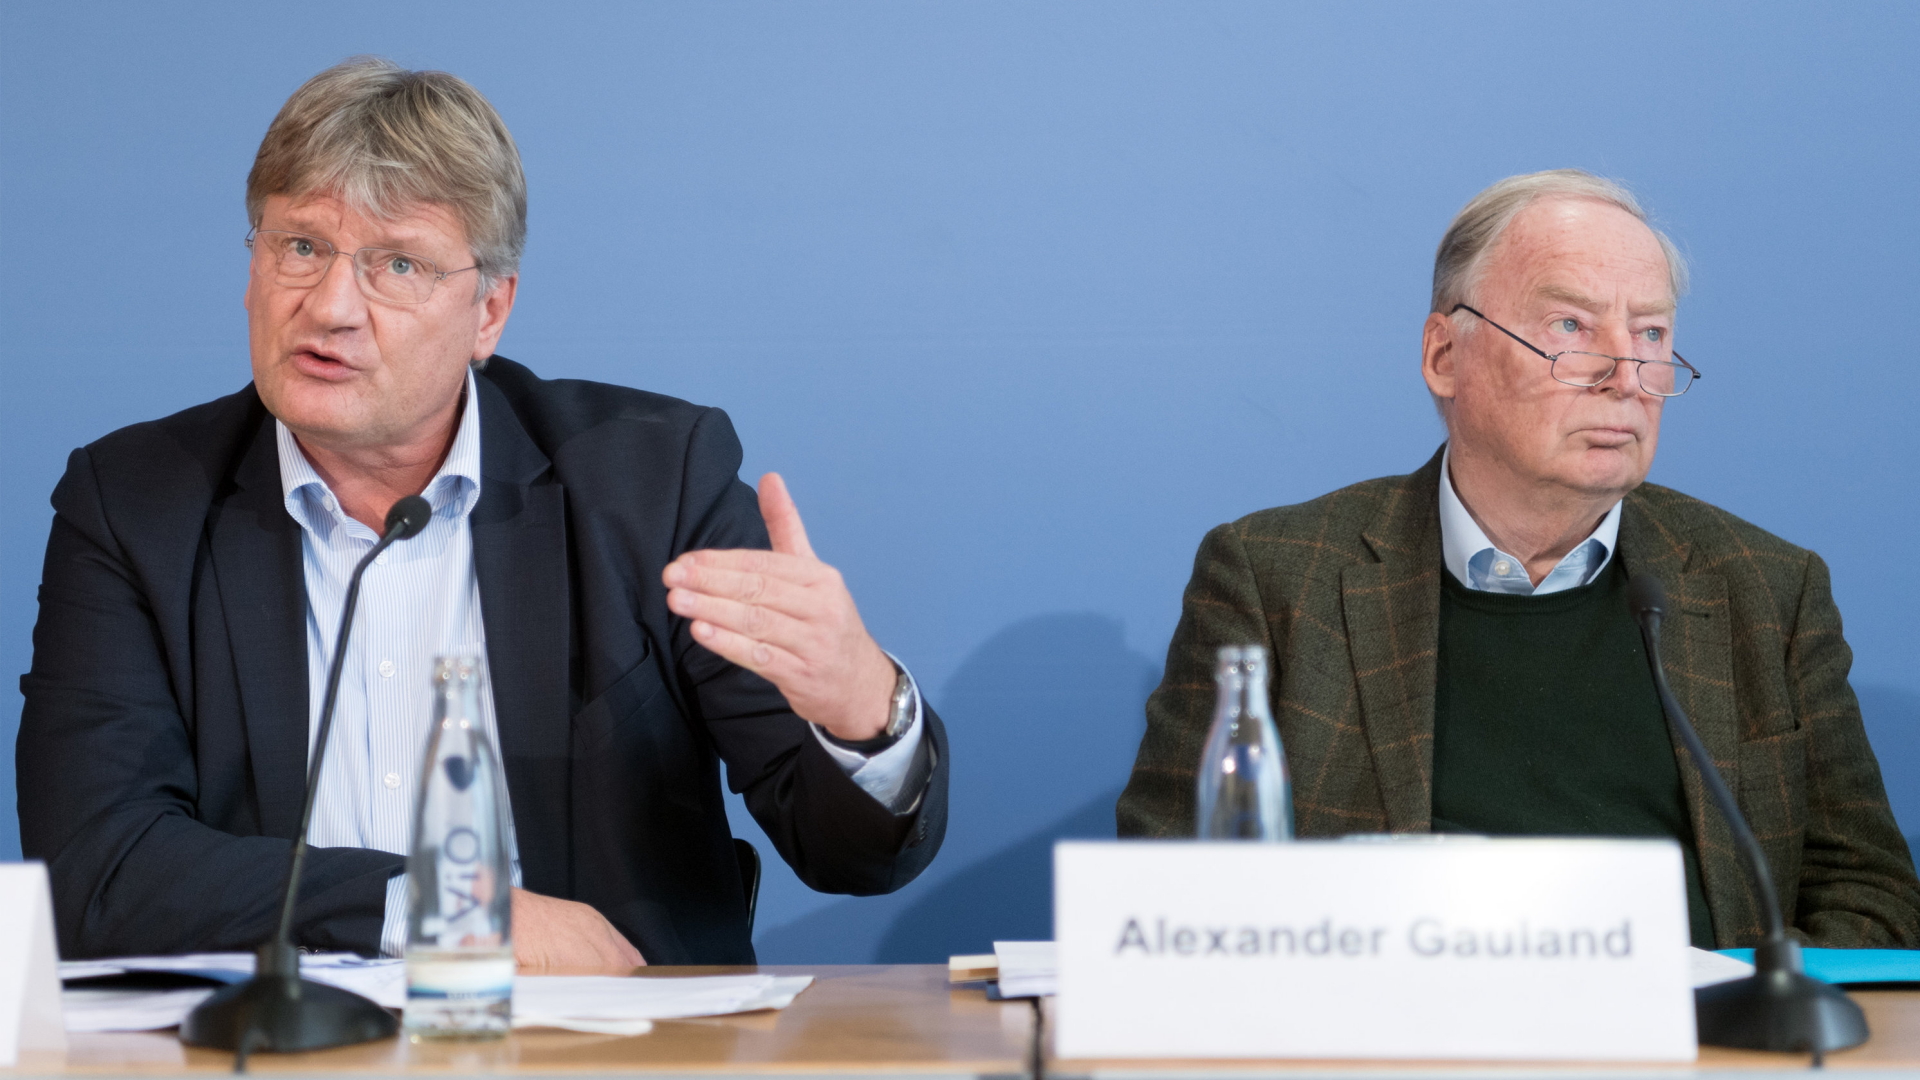 Alexander Gauland und Jörd Meuthen auf einer Pressekonferenz in Berlin | Bildquelle: dpa